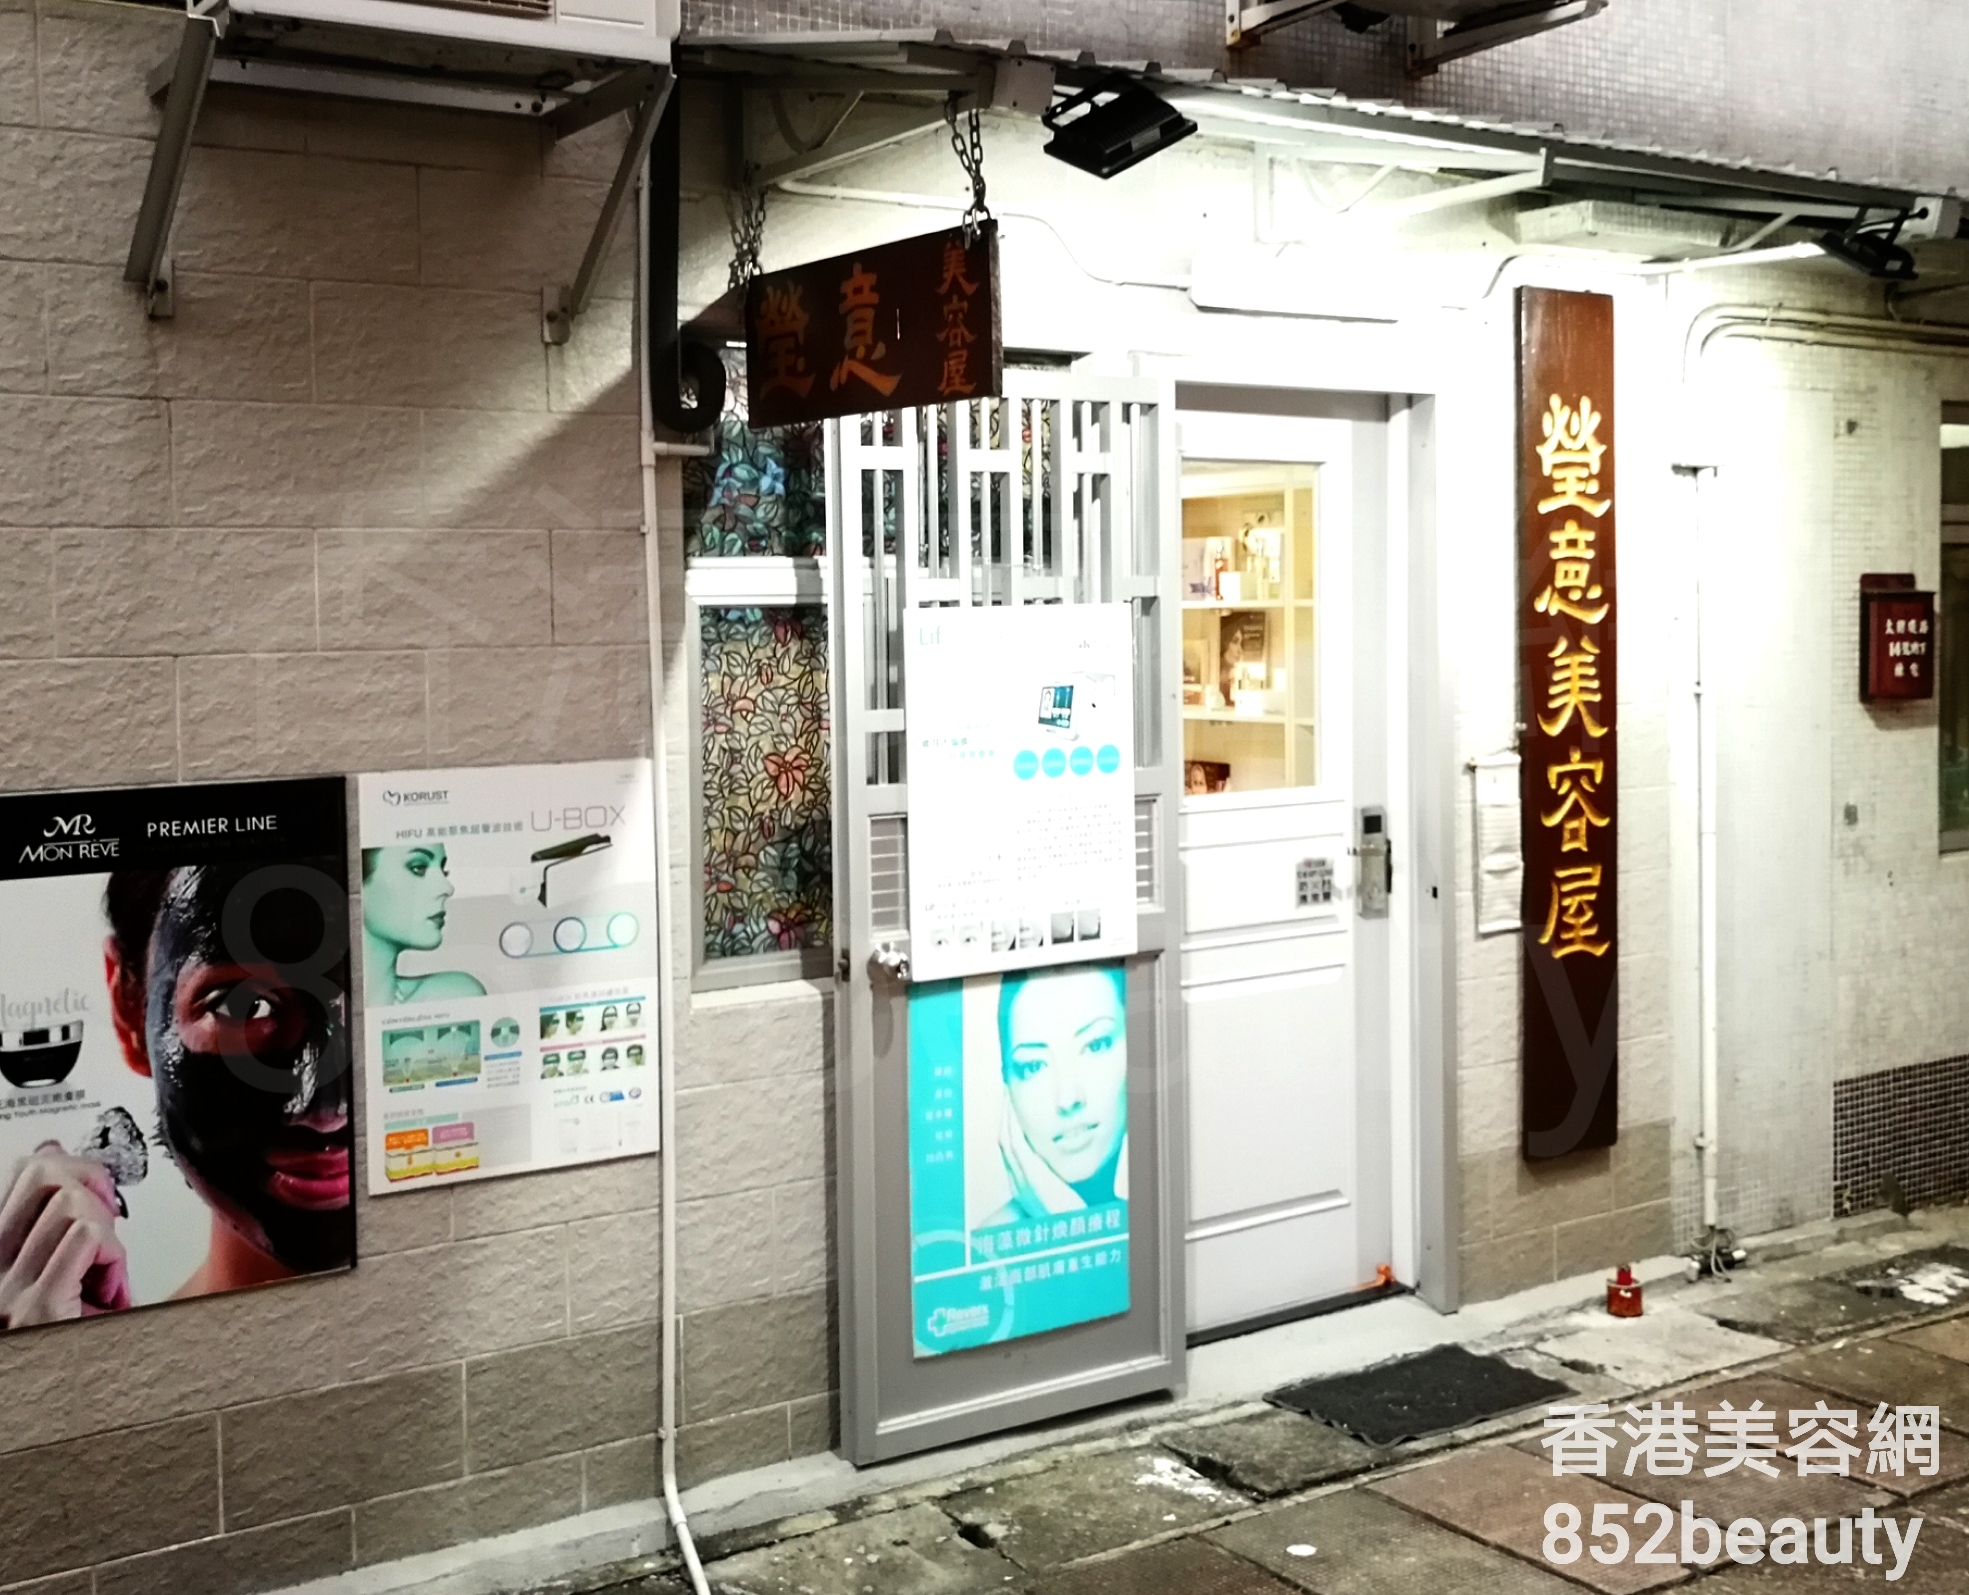 香港美容網 Hong Kong Beauty Salon 美容院 / 美容師: 瑩意美容屋